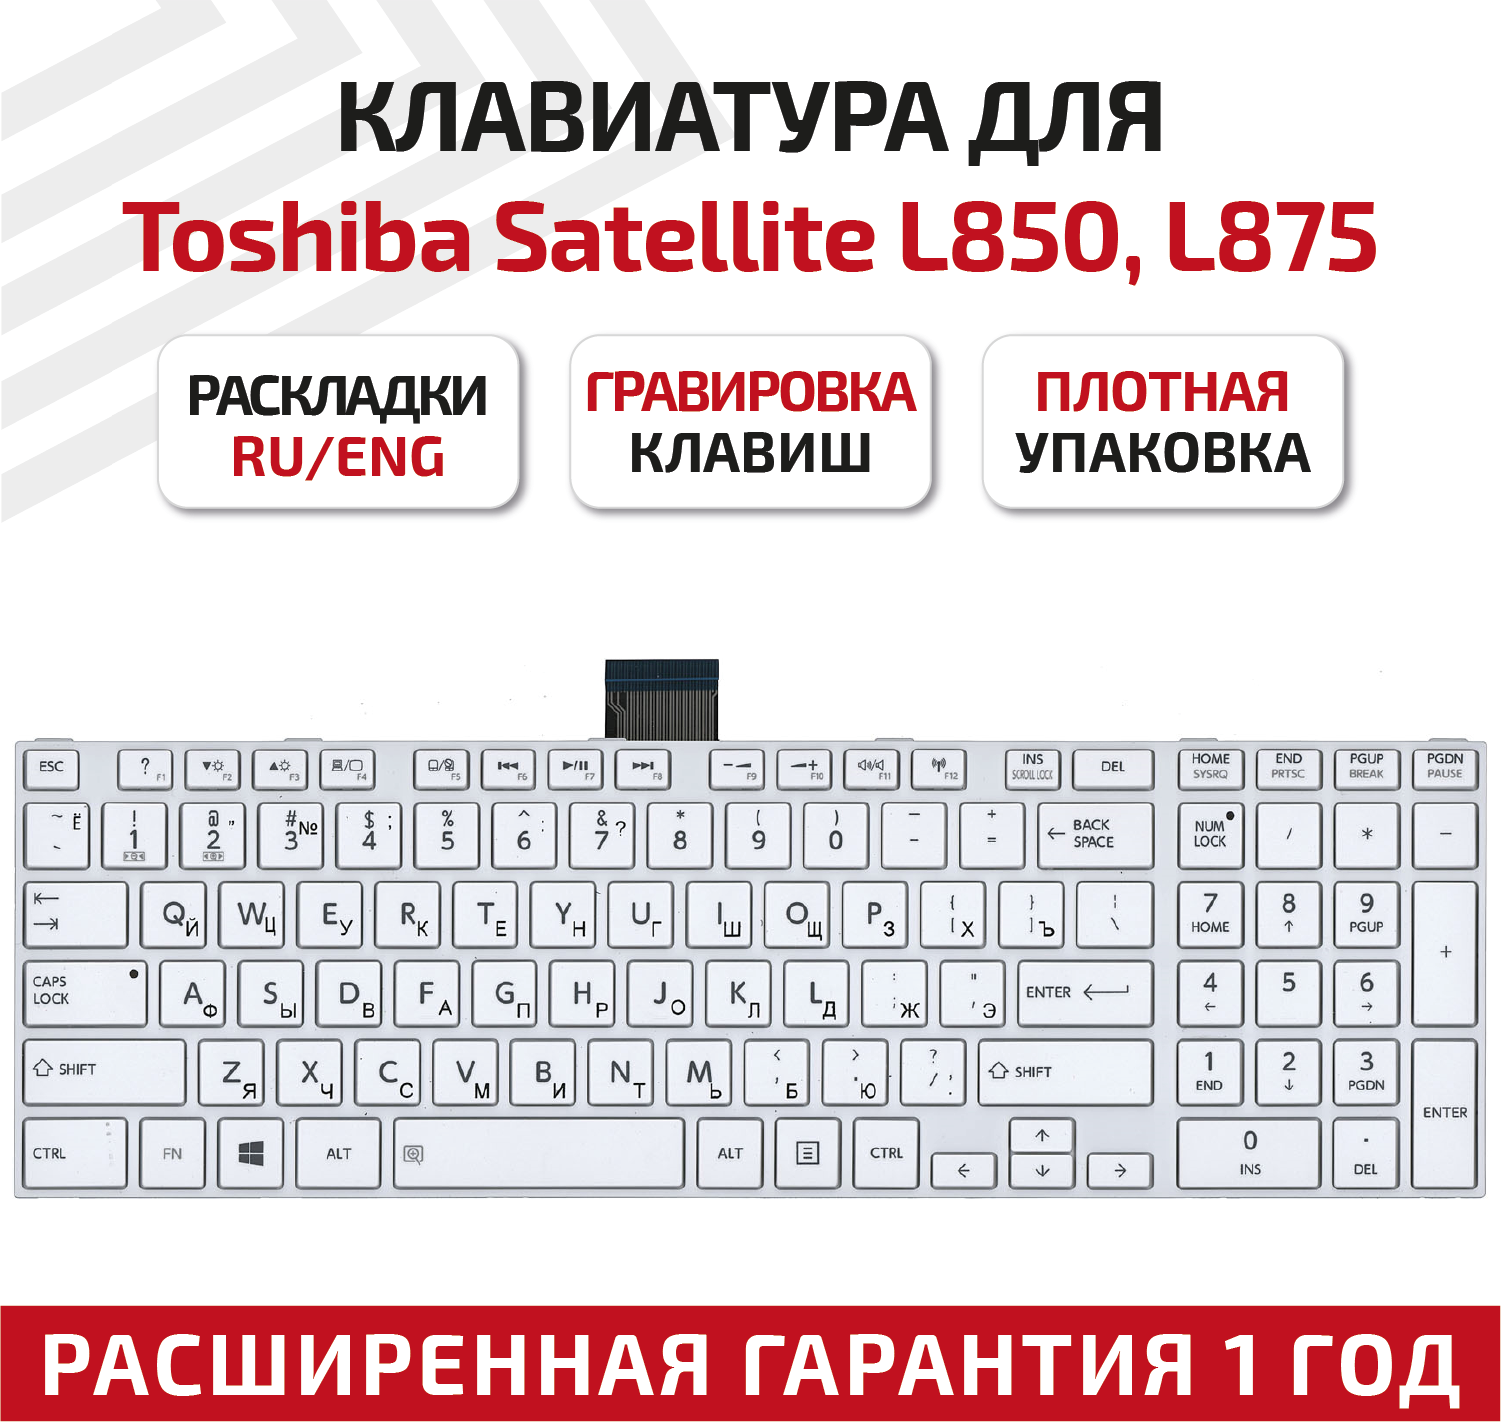 Клавиатура (keyboard) 0KN0-ZW3RU03 для ноутбука Toshiba Satellite C850, C850D, C855, C855D, C870, C875, L875, L850, белая c белой рамкой